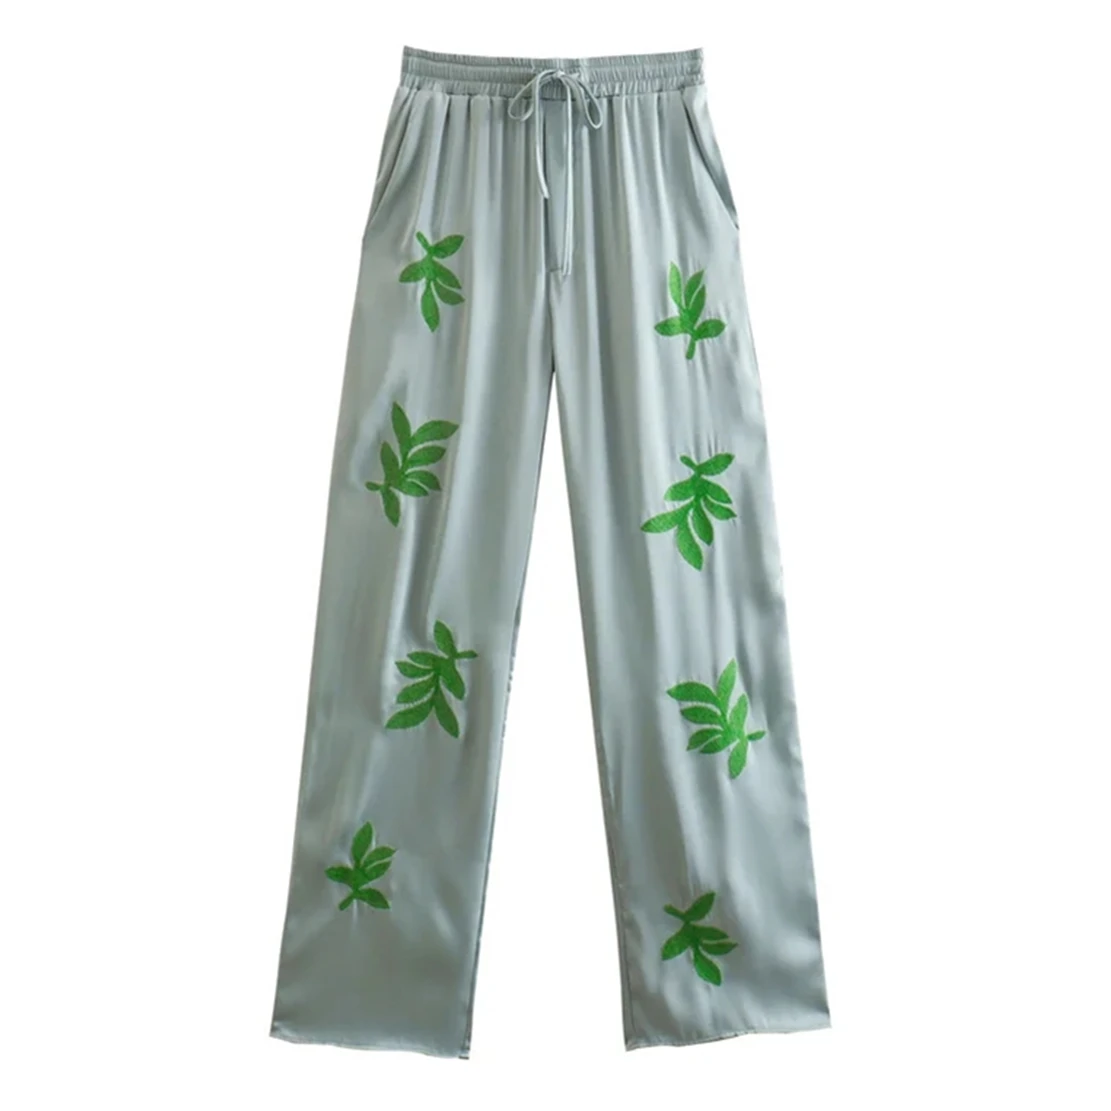 

Увядшие 2022 Модные свободные атласные брюки в английском стиле с вышивкой зеленых листьев и завязками на талии, повседневные женские брюки